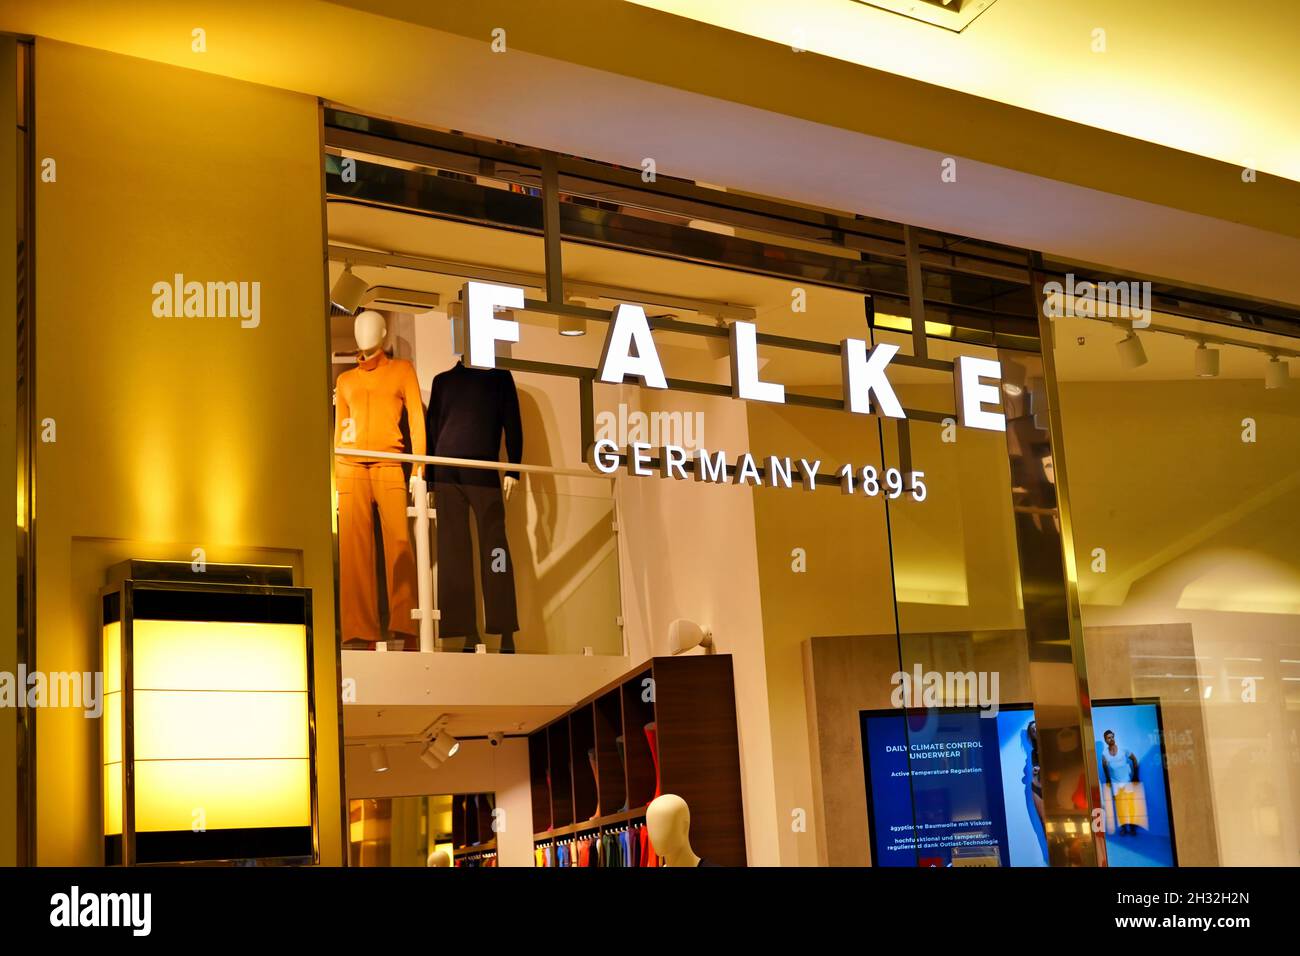 Außenansicht des deutschen Falke-Stores im Einkaufszentrum Schadow-Arkaden in Düsseldorf. Falke ist ein 1895 gegründetes deutsches Familienunternehmen für Strumpfwaren. Stockfoto